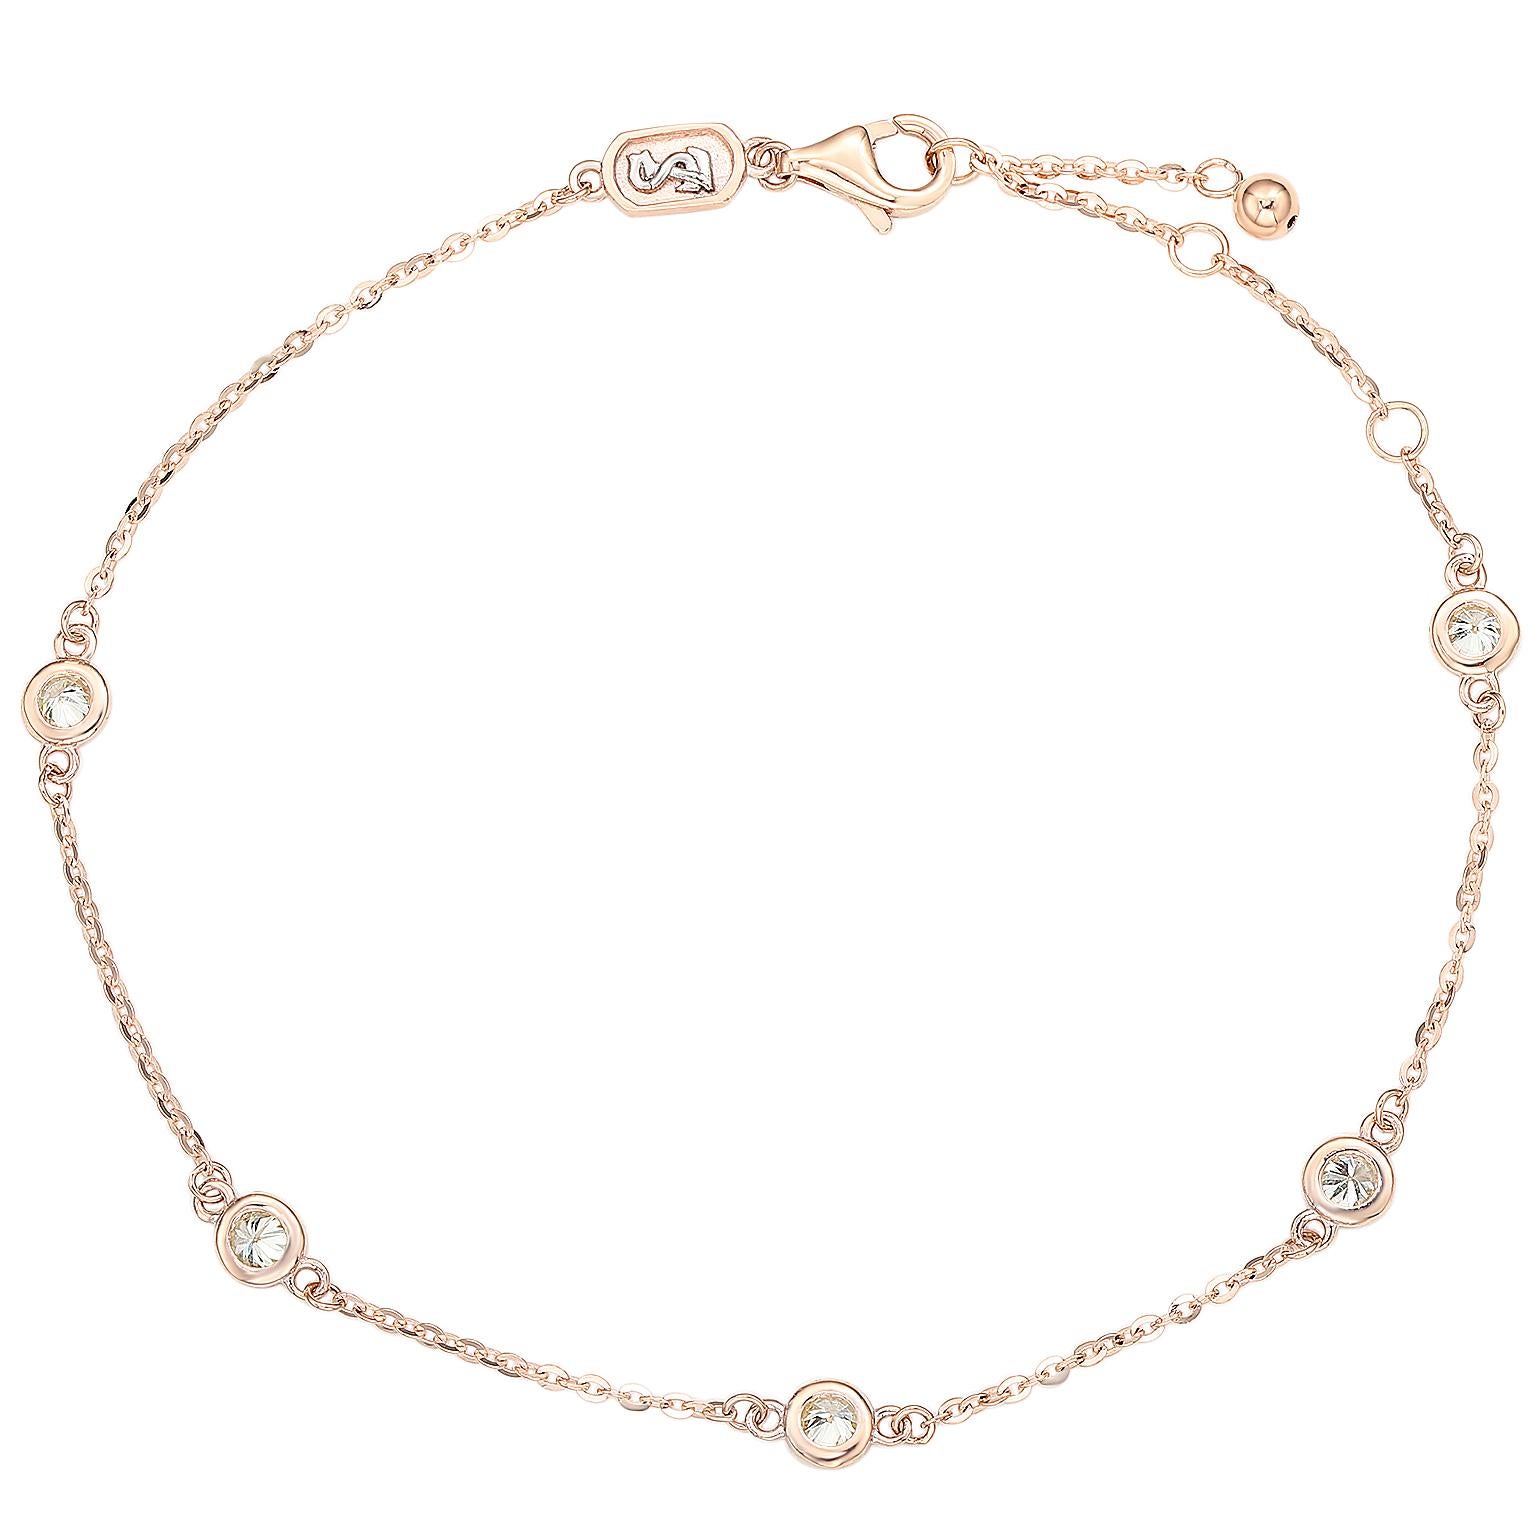 Bringen Sie Ihr Handgelenk zum Funkeln mit diesem wunderschönen Diamantarmband von Suzy Levian. Dieses prächtige Armband ist mit 5 Brillanten im Rundschliff in einer exquisiten Lünette aus 14-karätigem Roségold geschmückt. Dieses Armband ist